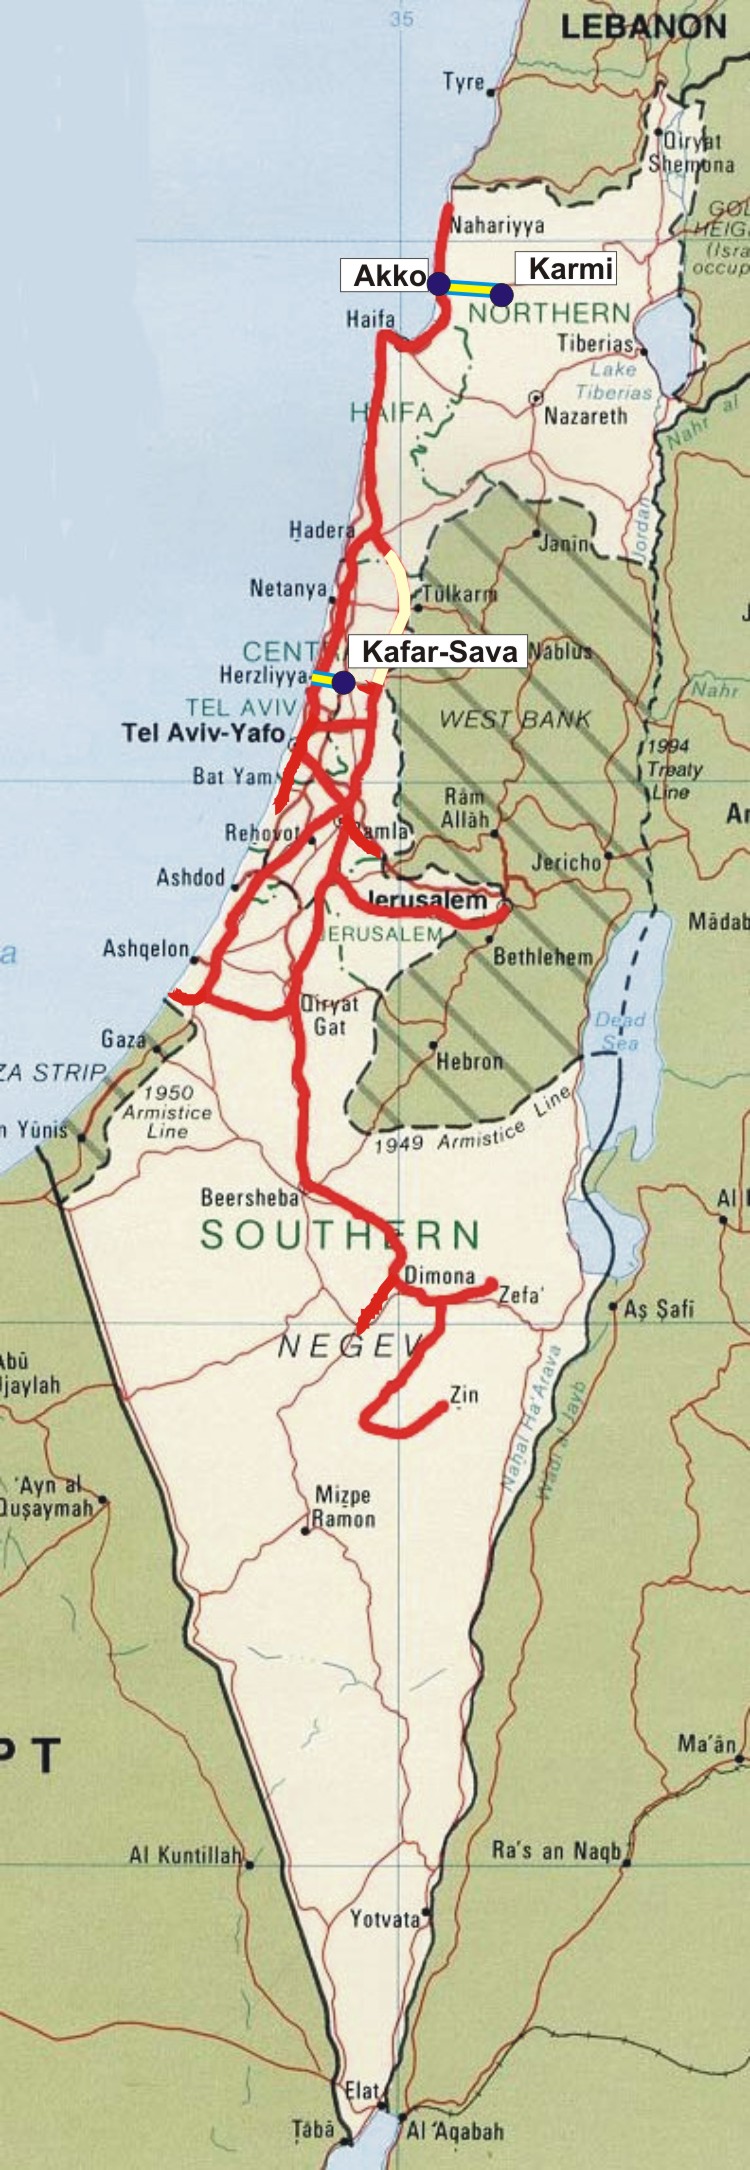 Mapa de la red ferroviaria israelí, con los nuevos tramos que serán electrificados, al norte y en el centro, junto a la capital Tel Aviv. Edición Vía Libre.